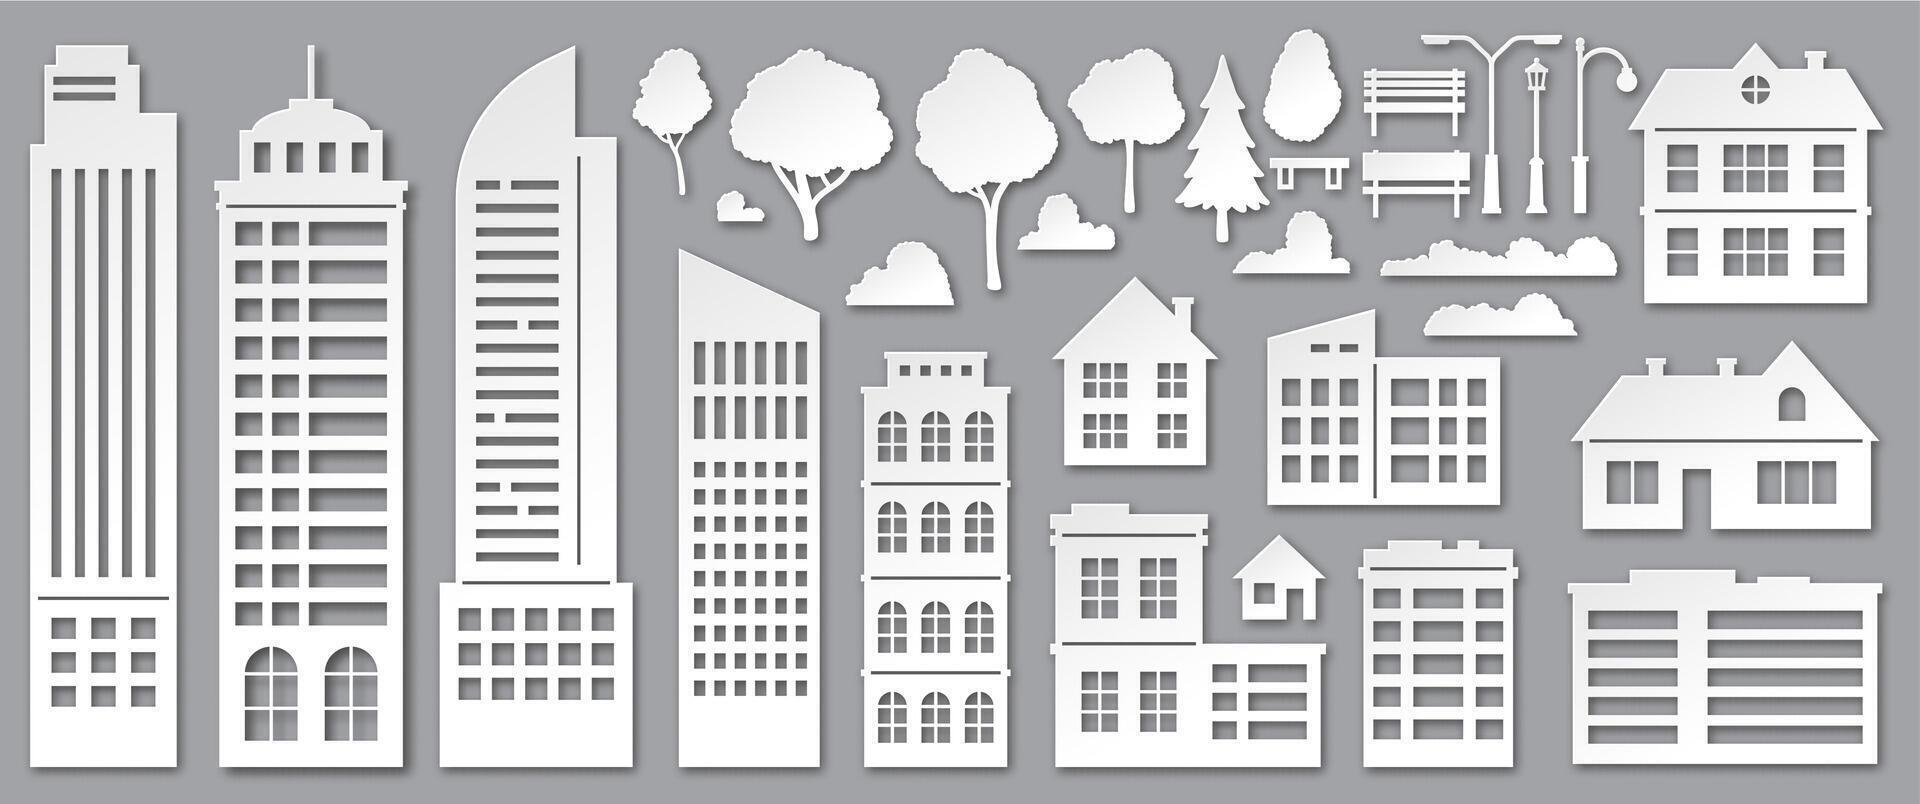 papier besnoeiing stad gebouwen. origami wolkenkrabbers, stad- huizen, dorp huisjes en park bomen silhouetten. stedelijk landschap elementen vector reeks